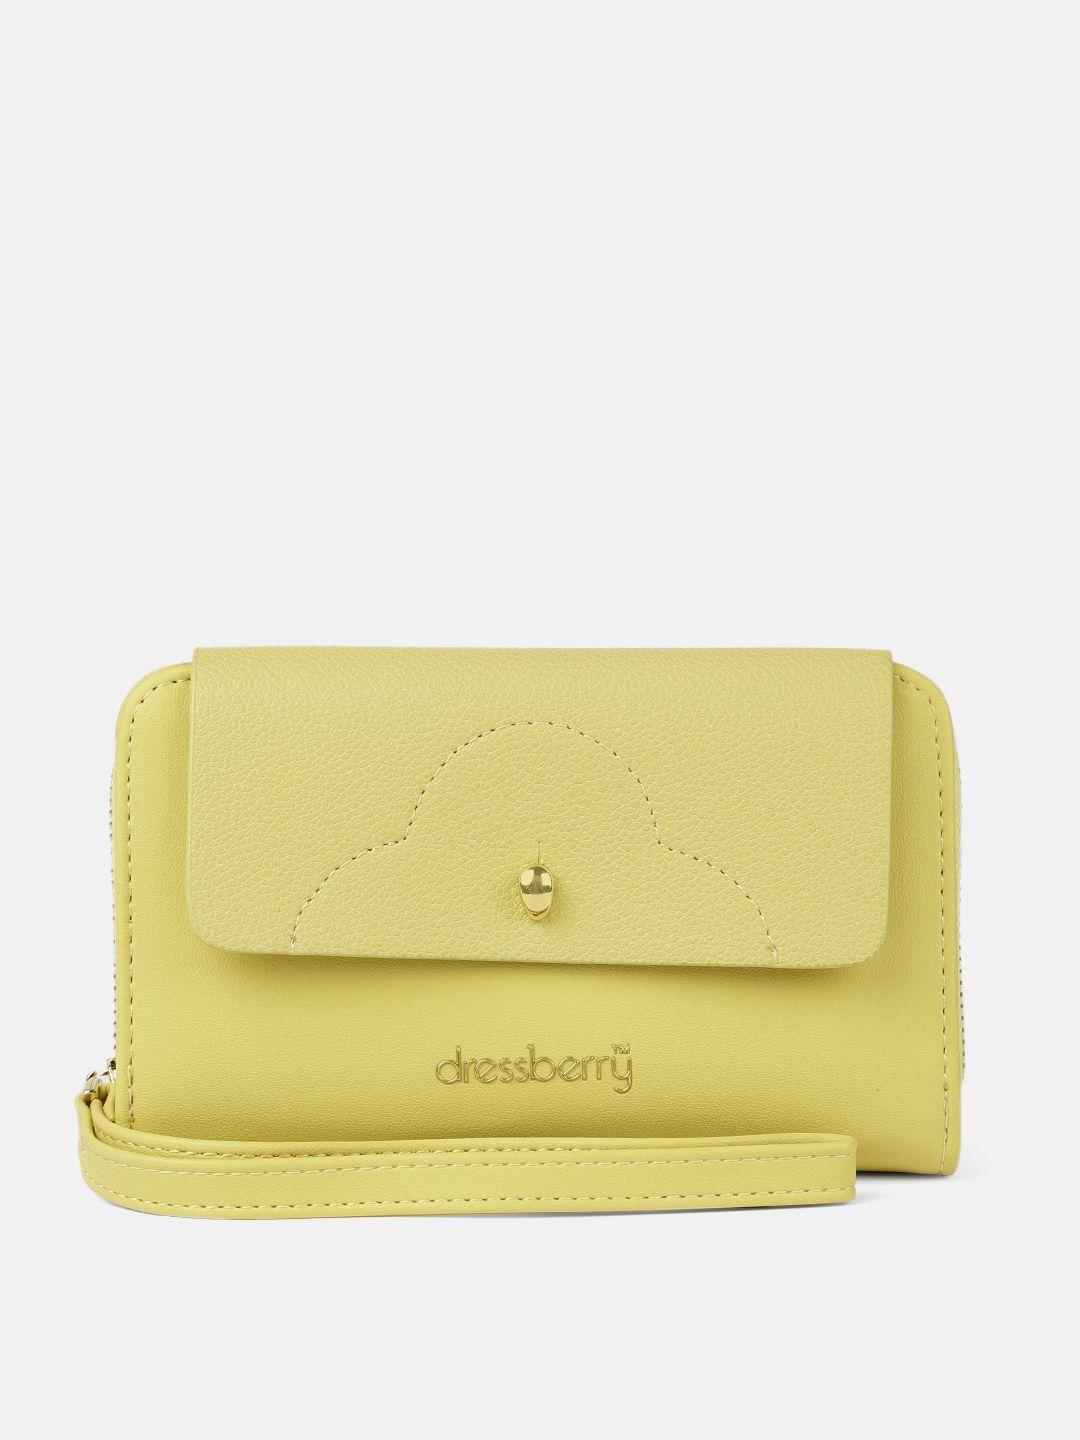 dressberry women yellow solid zip around wallet